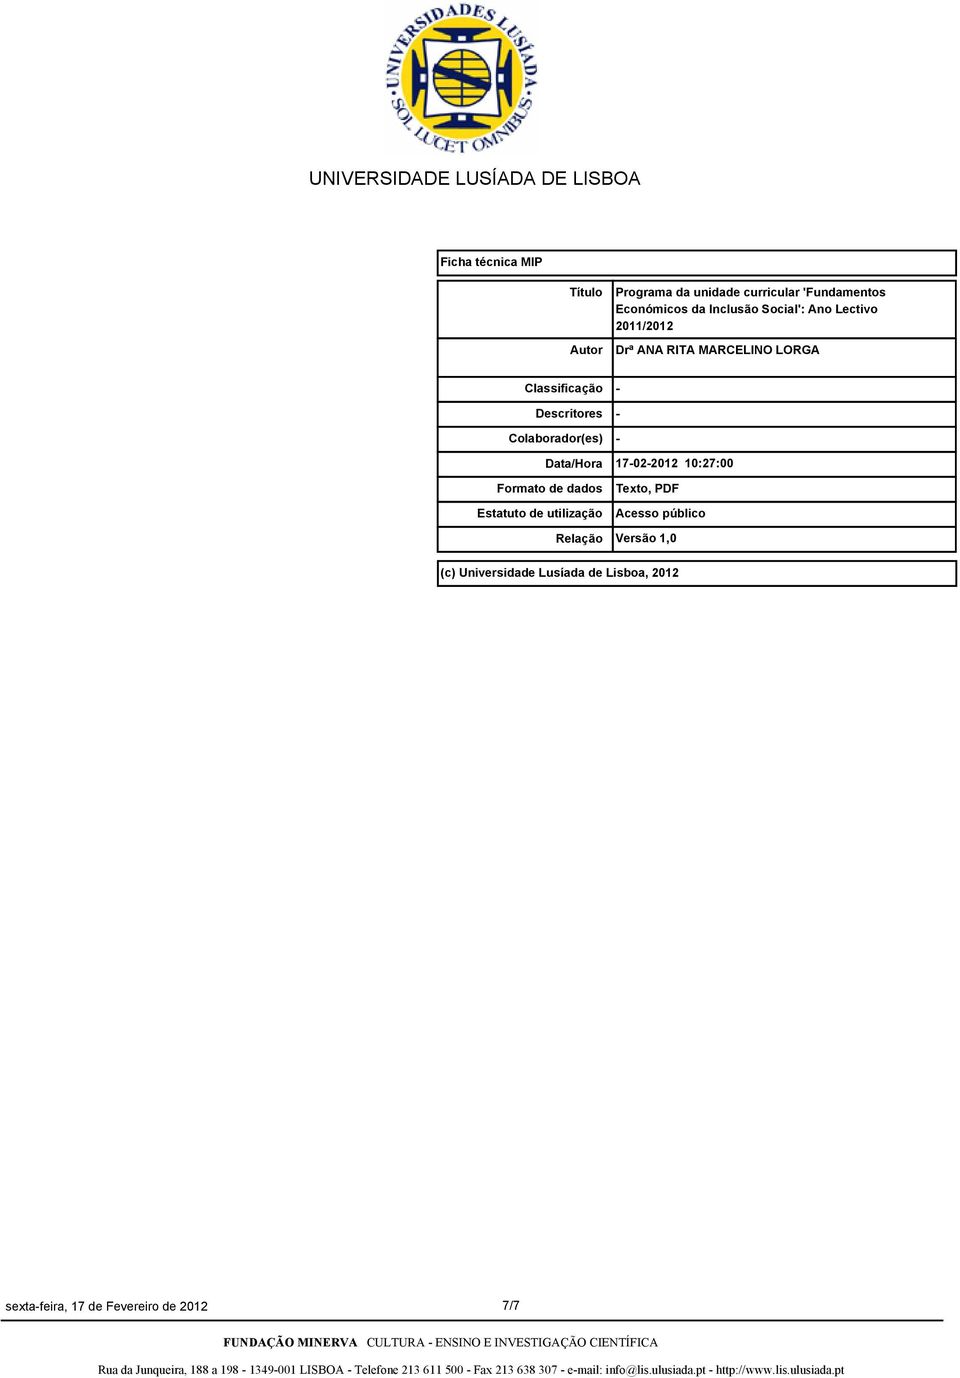 Colaborador(es) Data/Hora Formato de dados Estatuto de utilização Relação - - - 17-02-2012 10:27:00